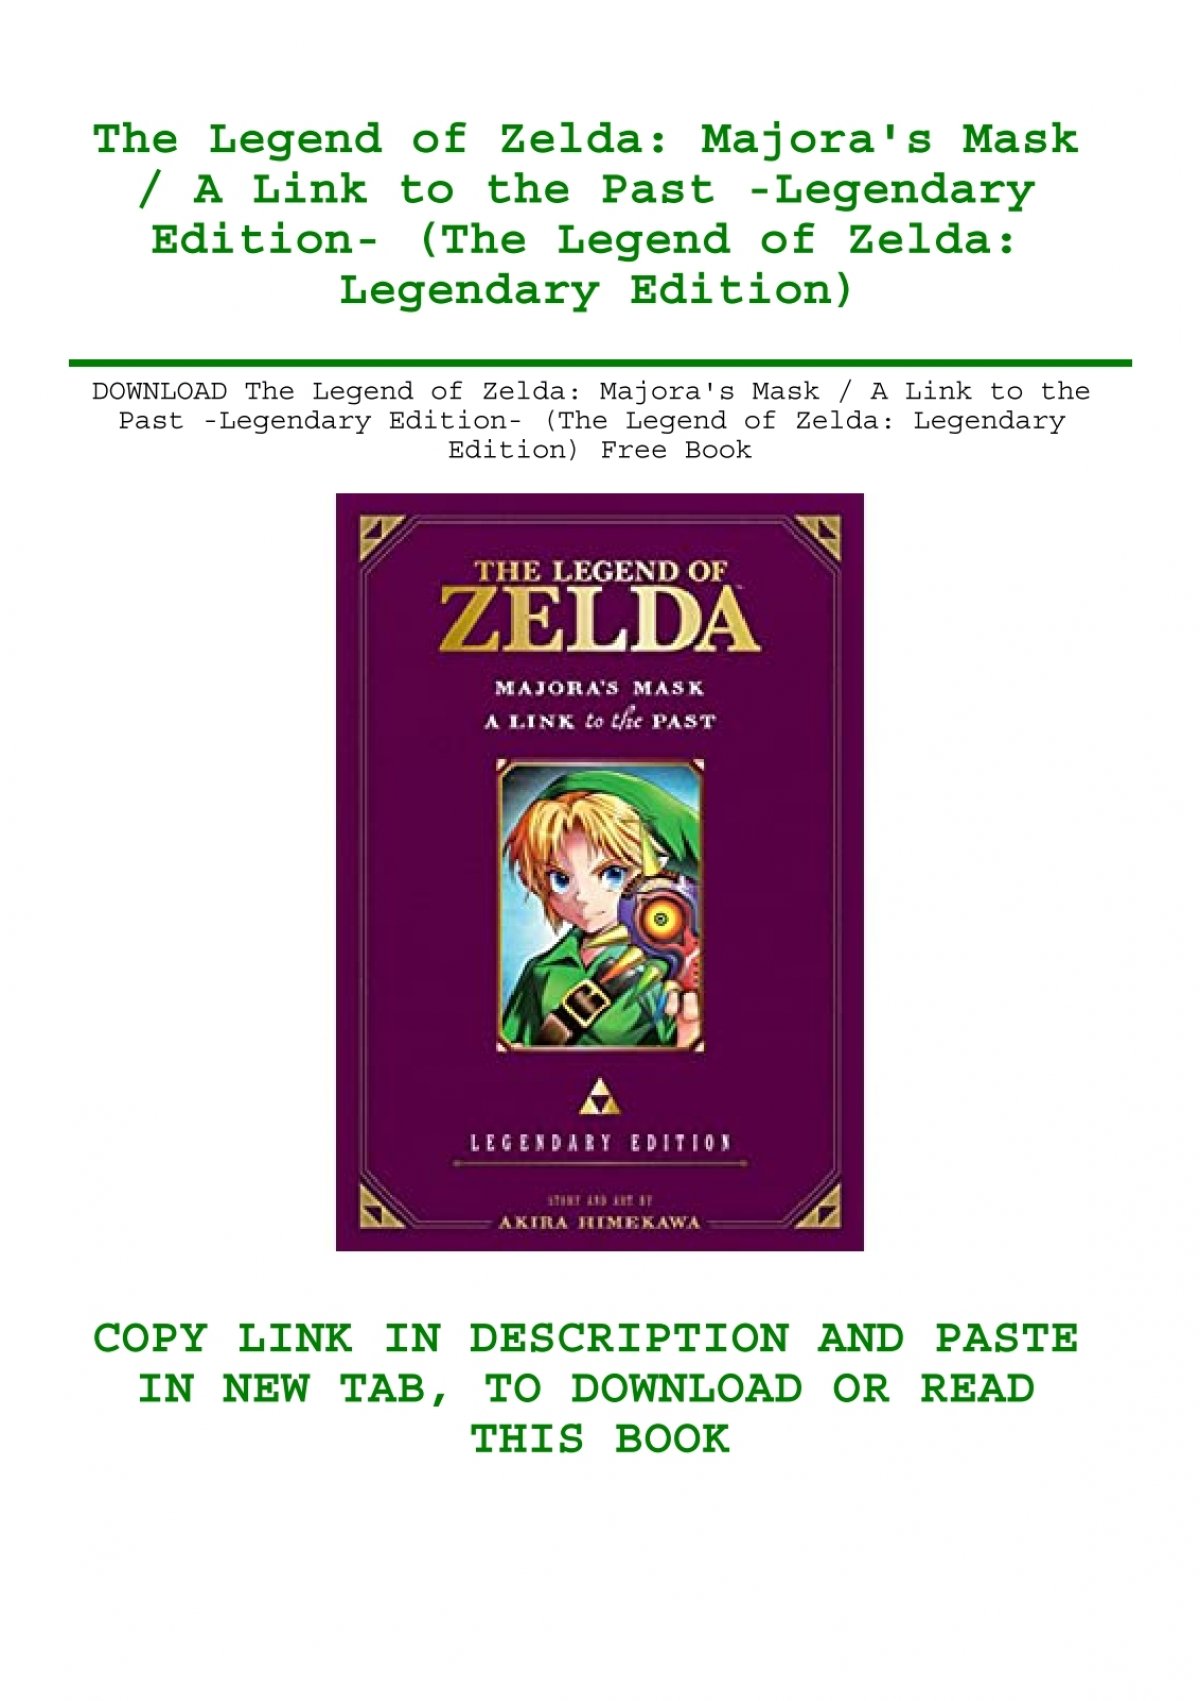 The Legend of Zelda: Majora's Mask - Legendary Edition 